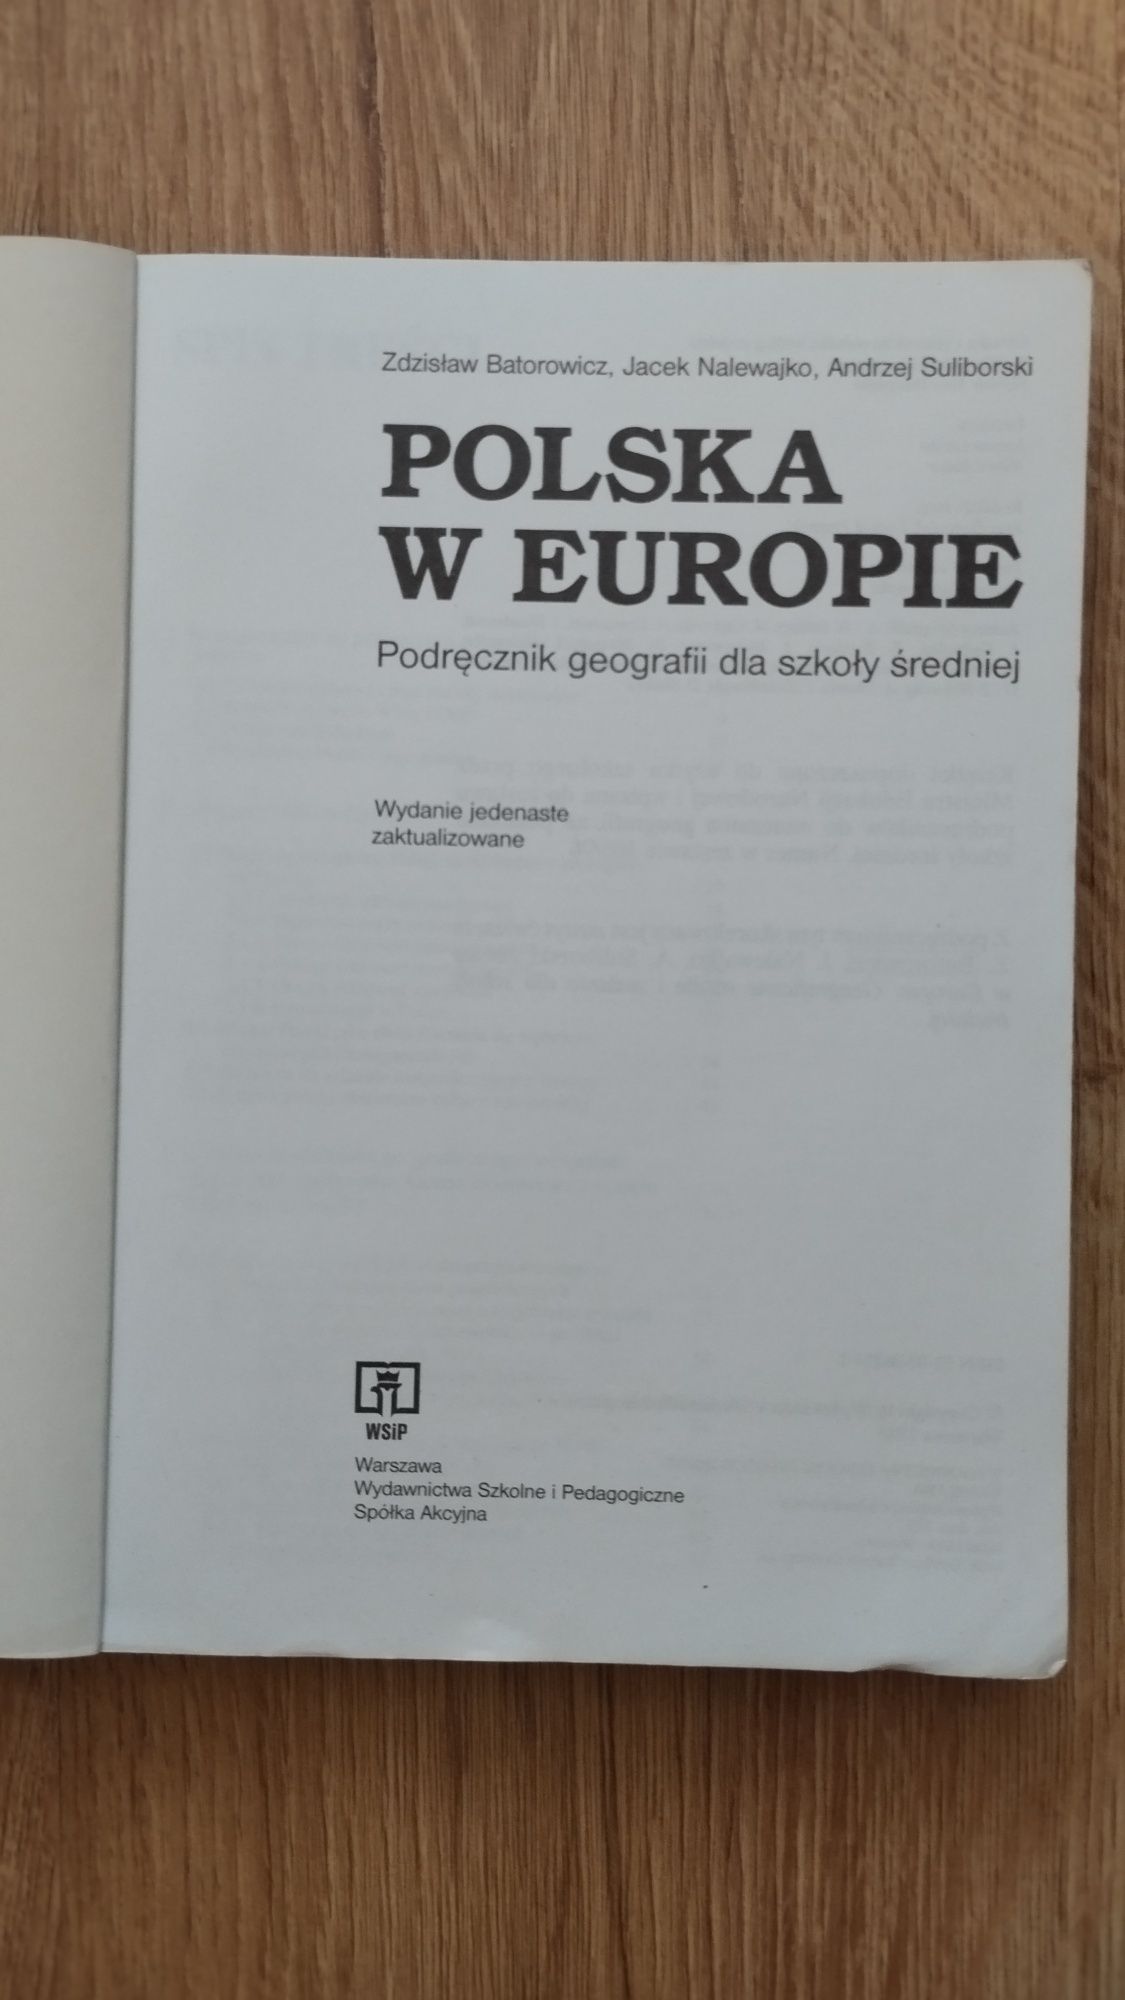 Podręcznik geografii dla szkoły średniej Polska w Europie